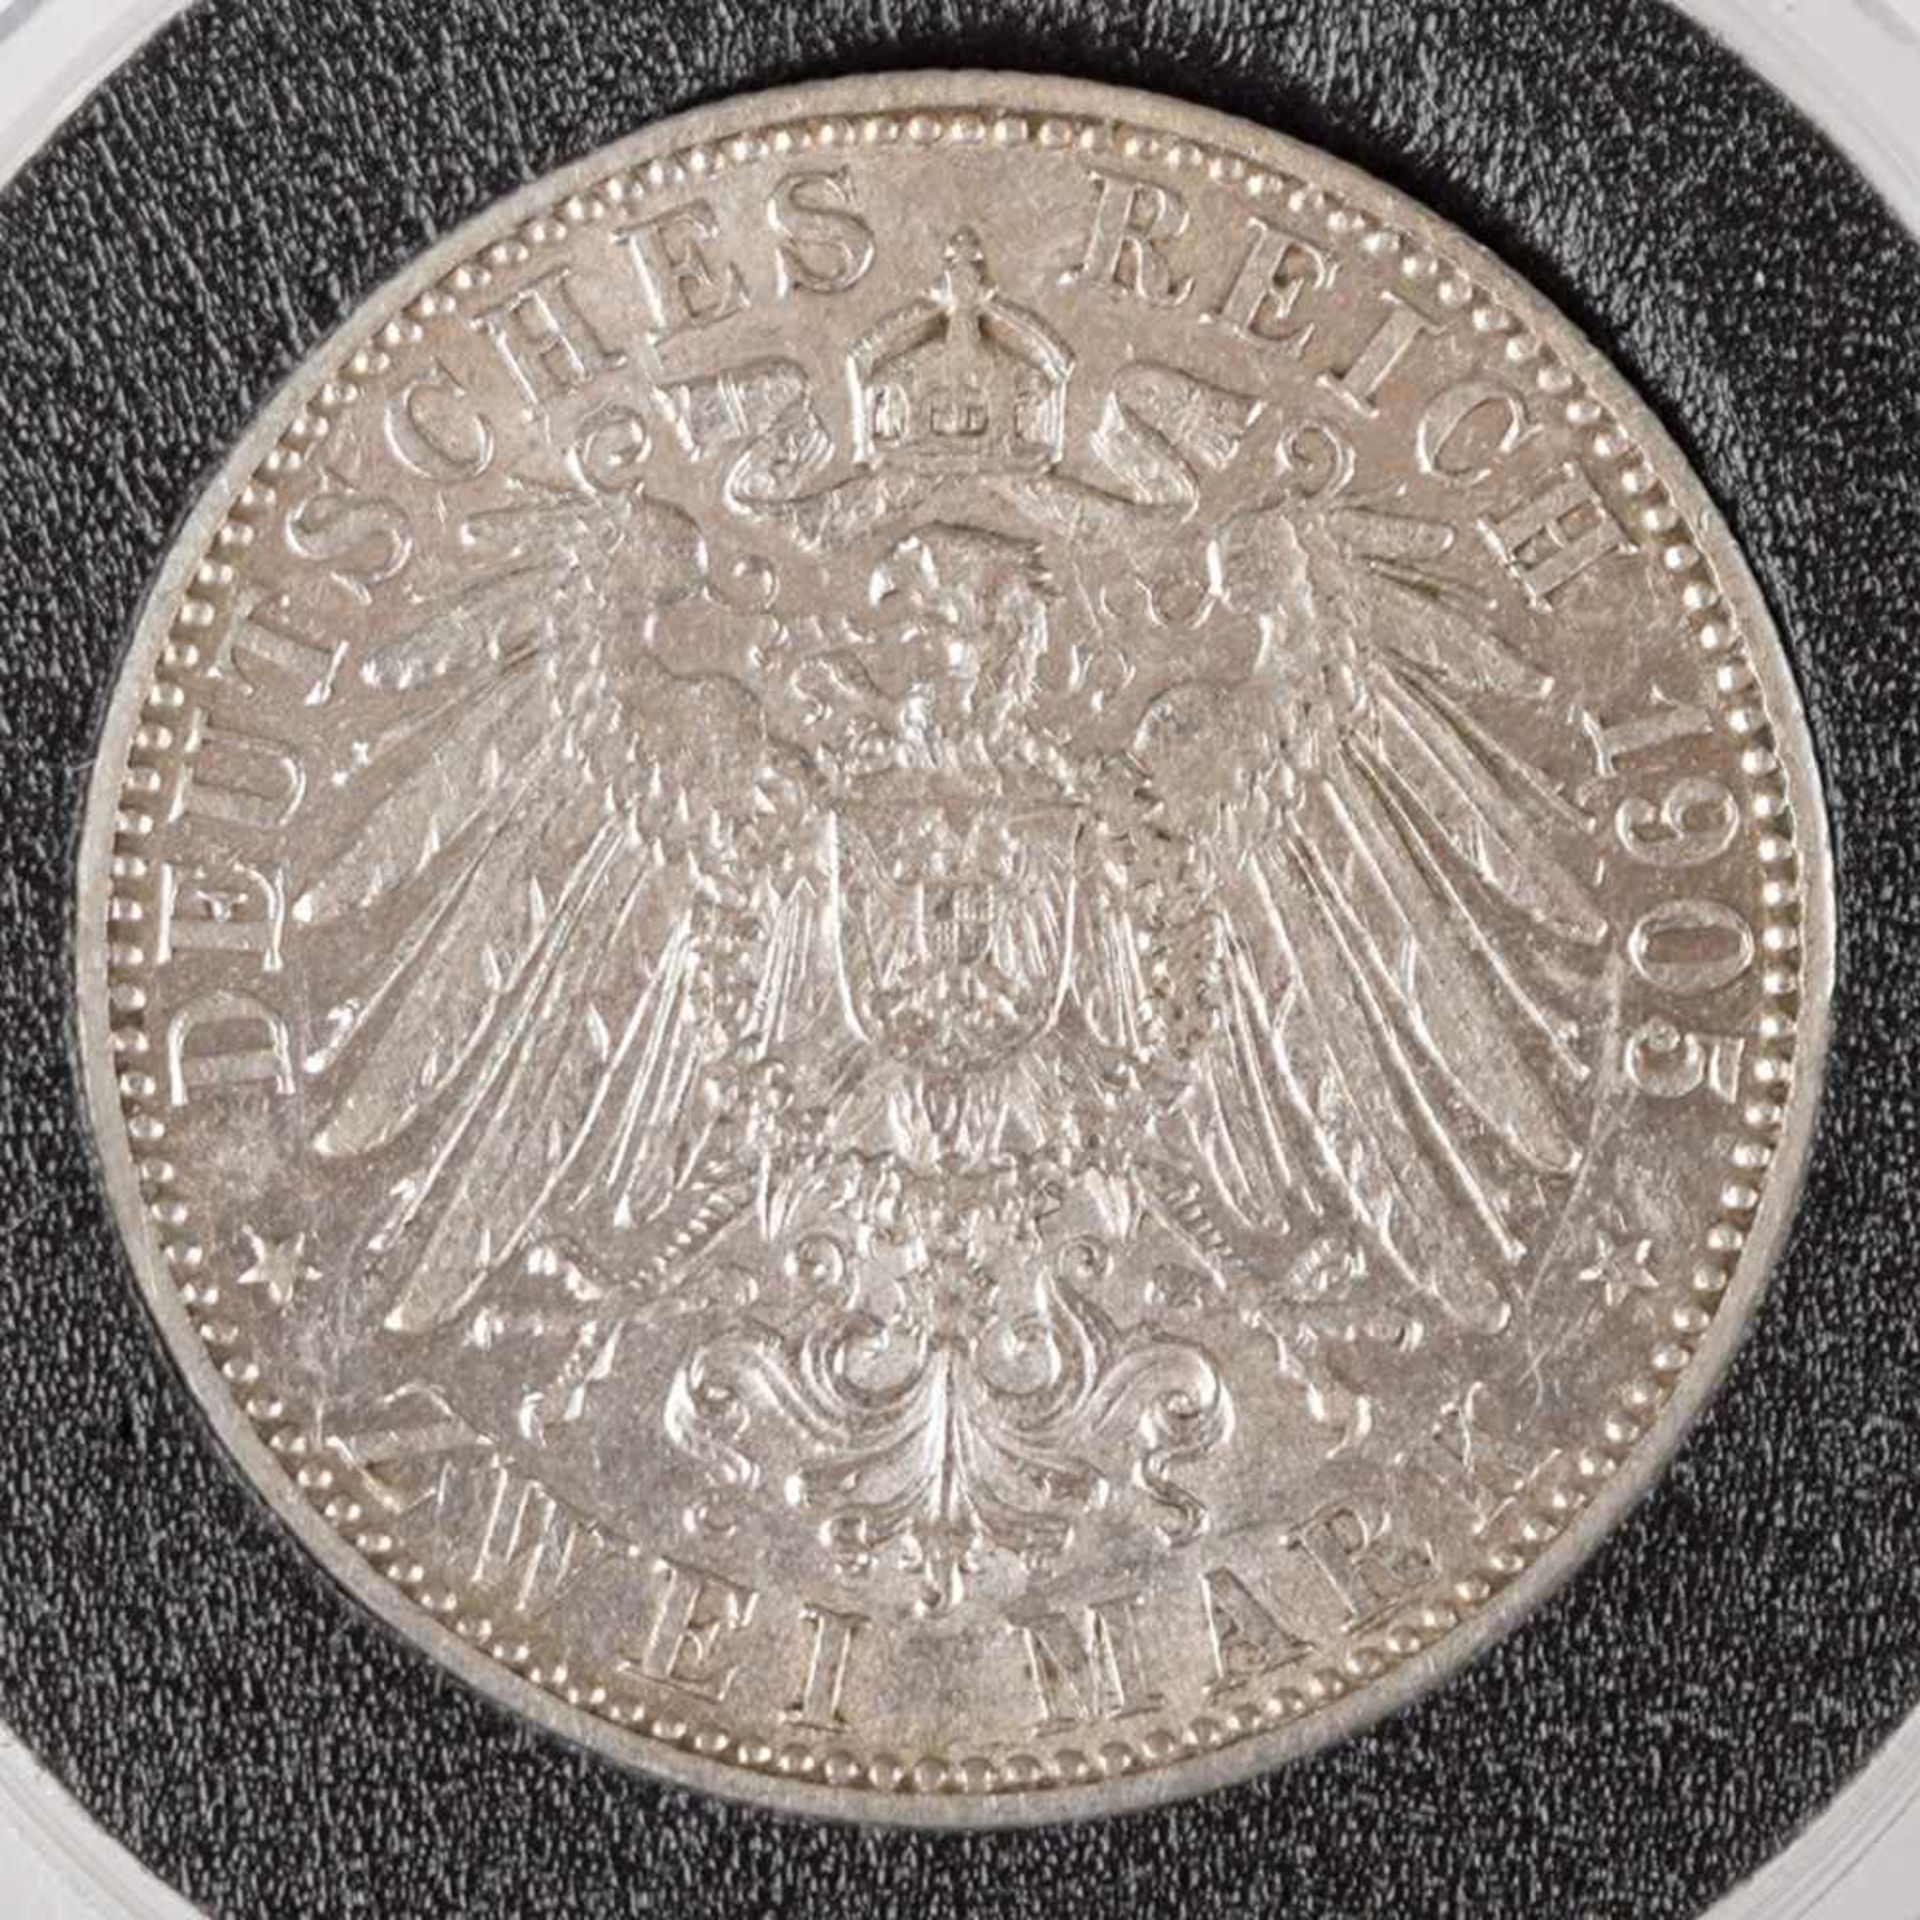 Silbermünze Kaiserreich - Bayern 1905 2 Mark, av. Otto König von Bayern Kopf links, rv. bekrönter - Bild 3 aus 3